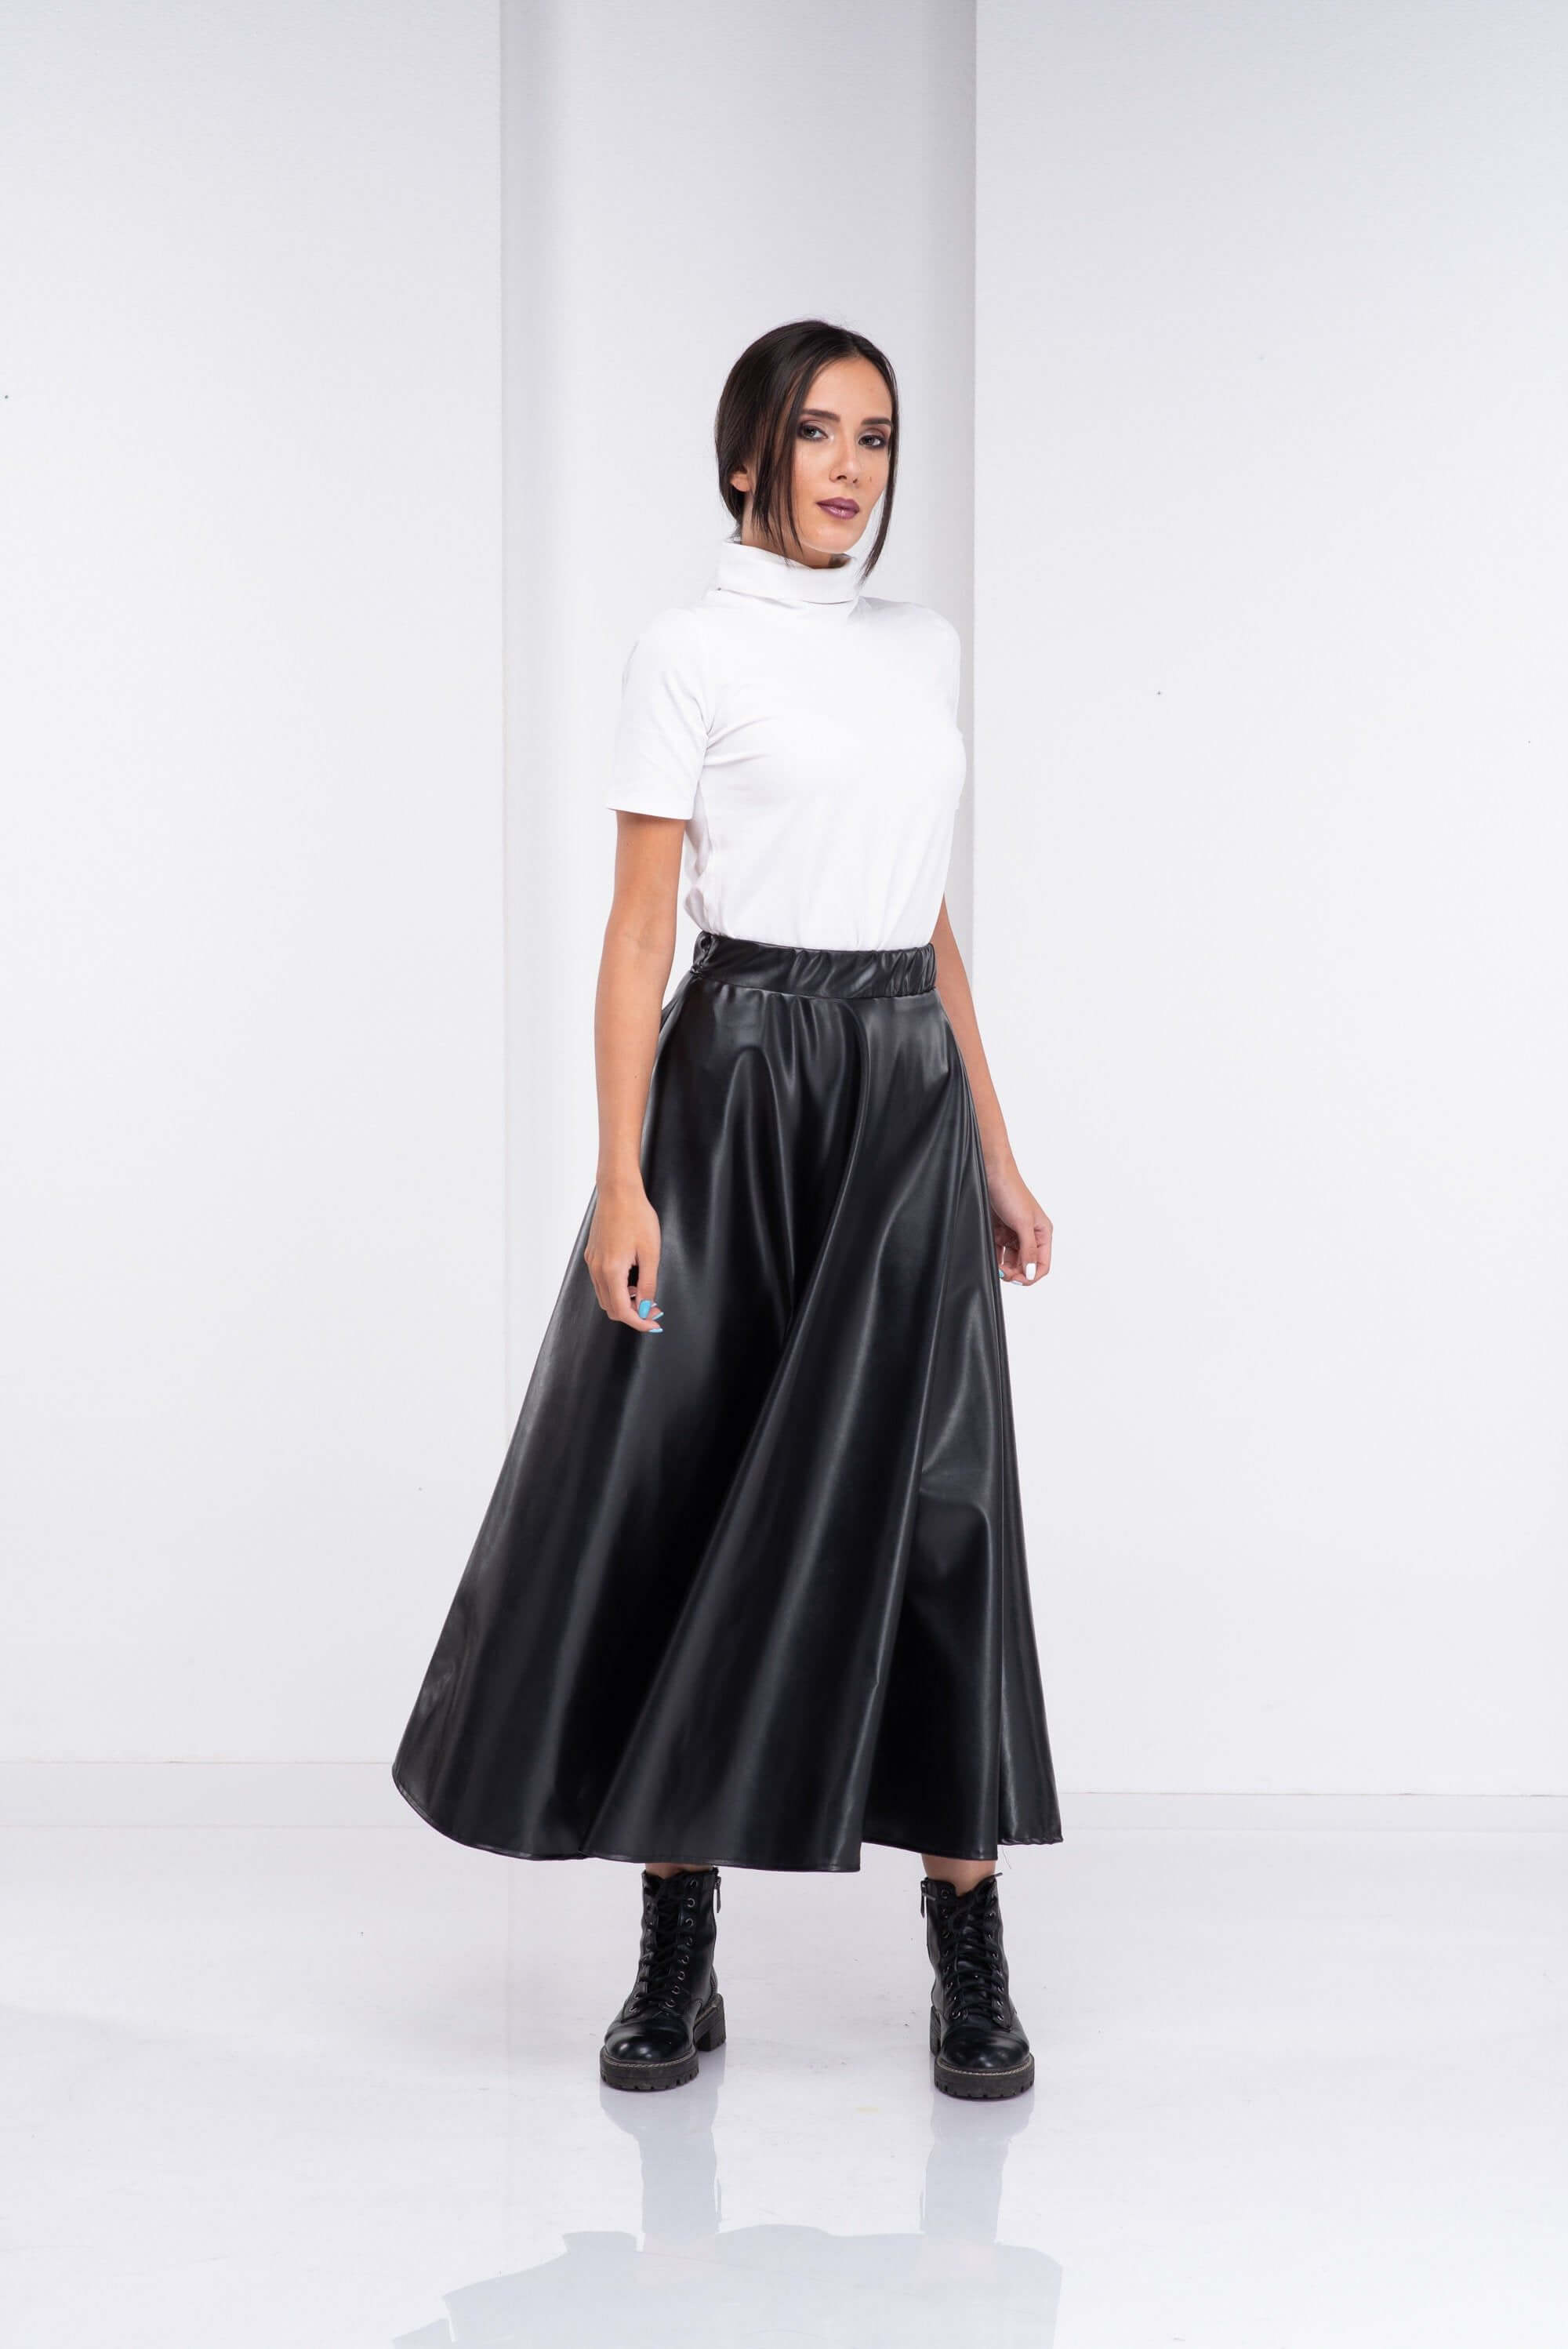 Leather Skirt, High Waisted Skirt, Black Steampunk Skirt, Long Maxi Skirt, Vegan Skirt